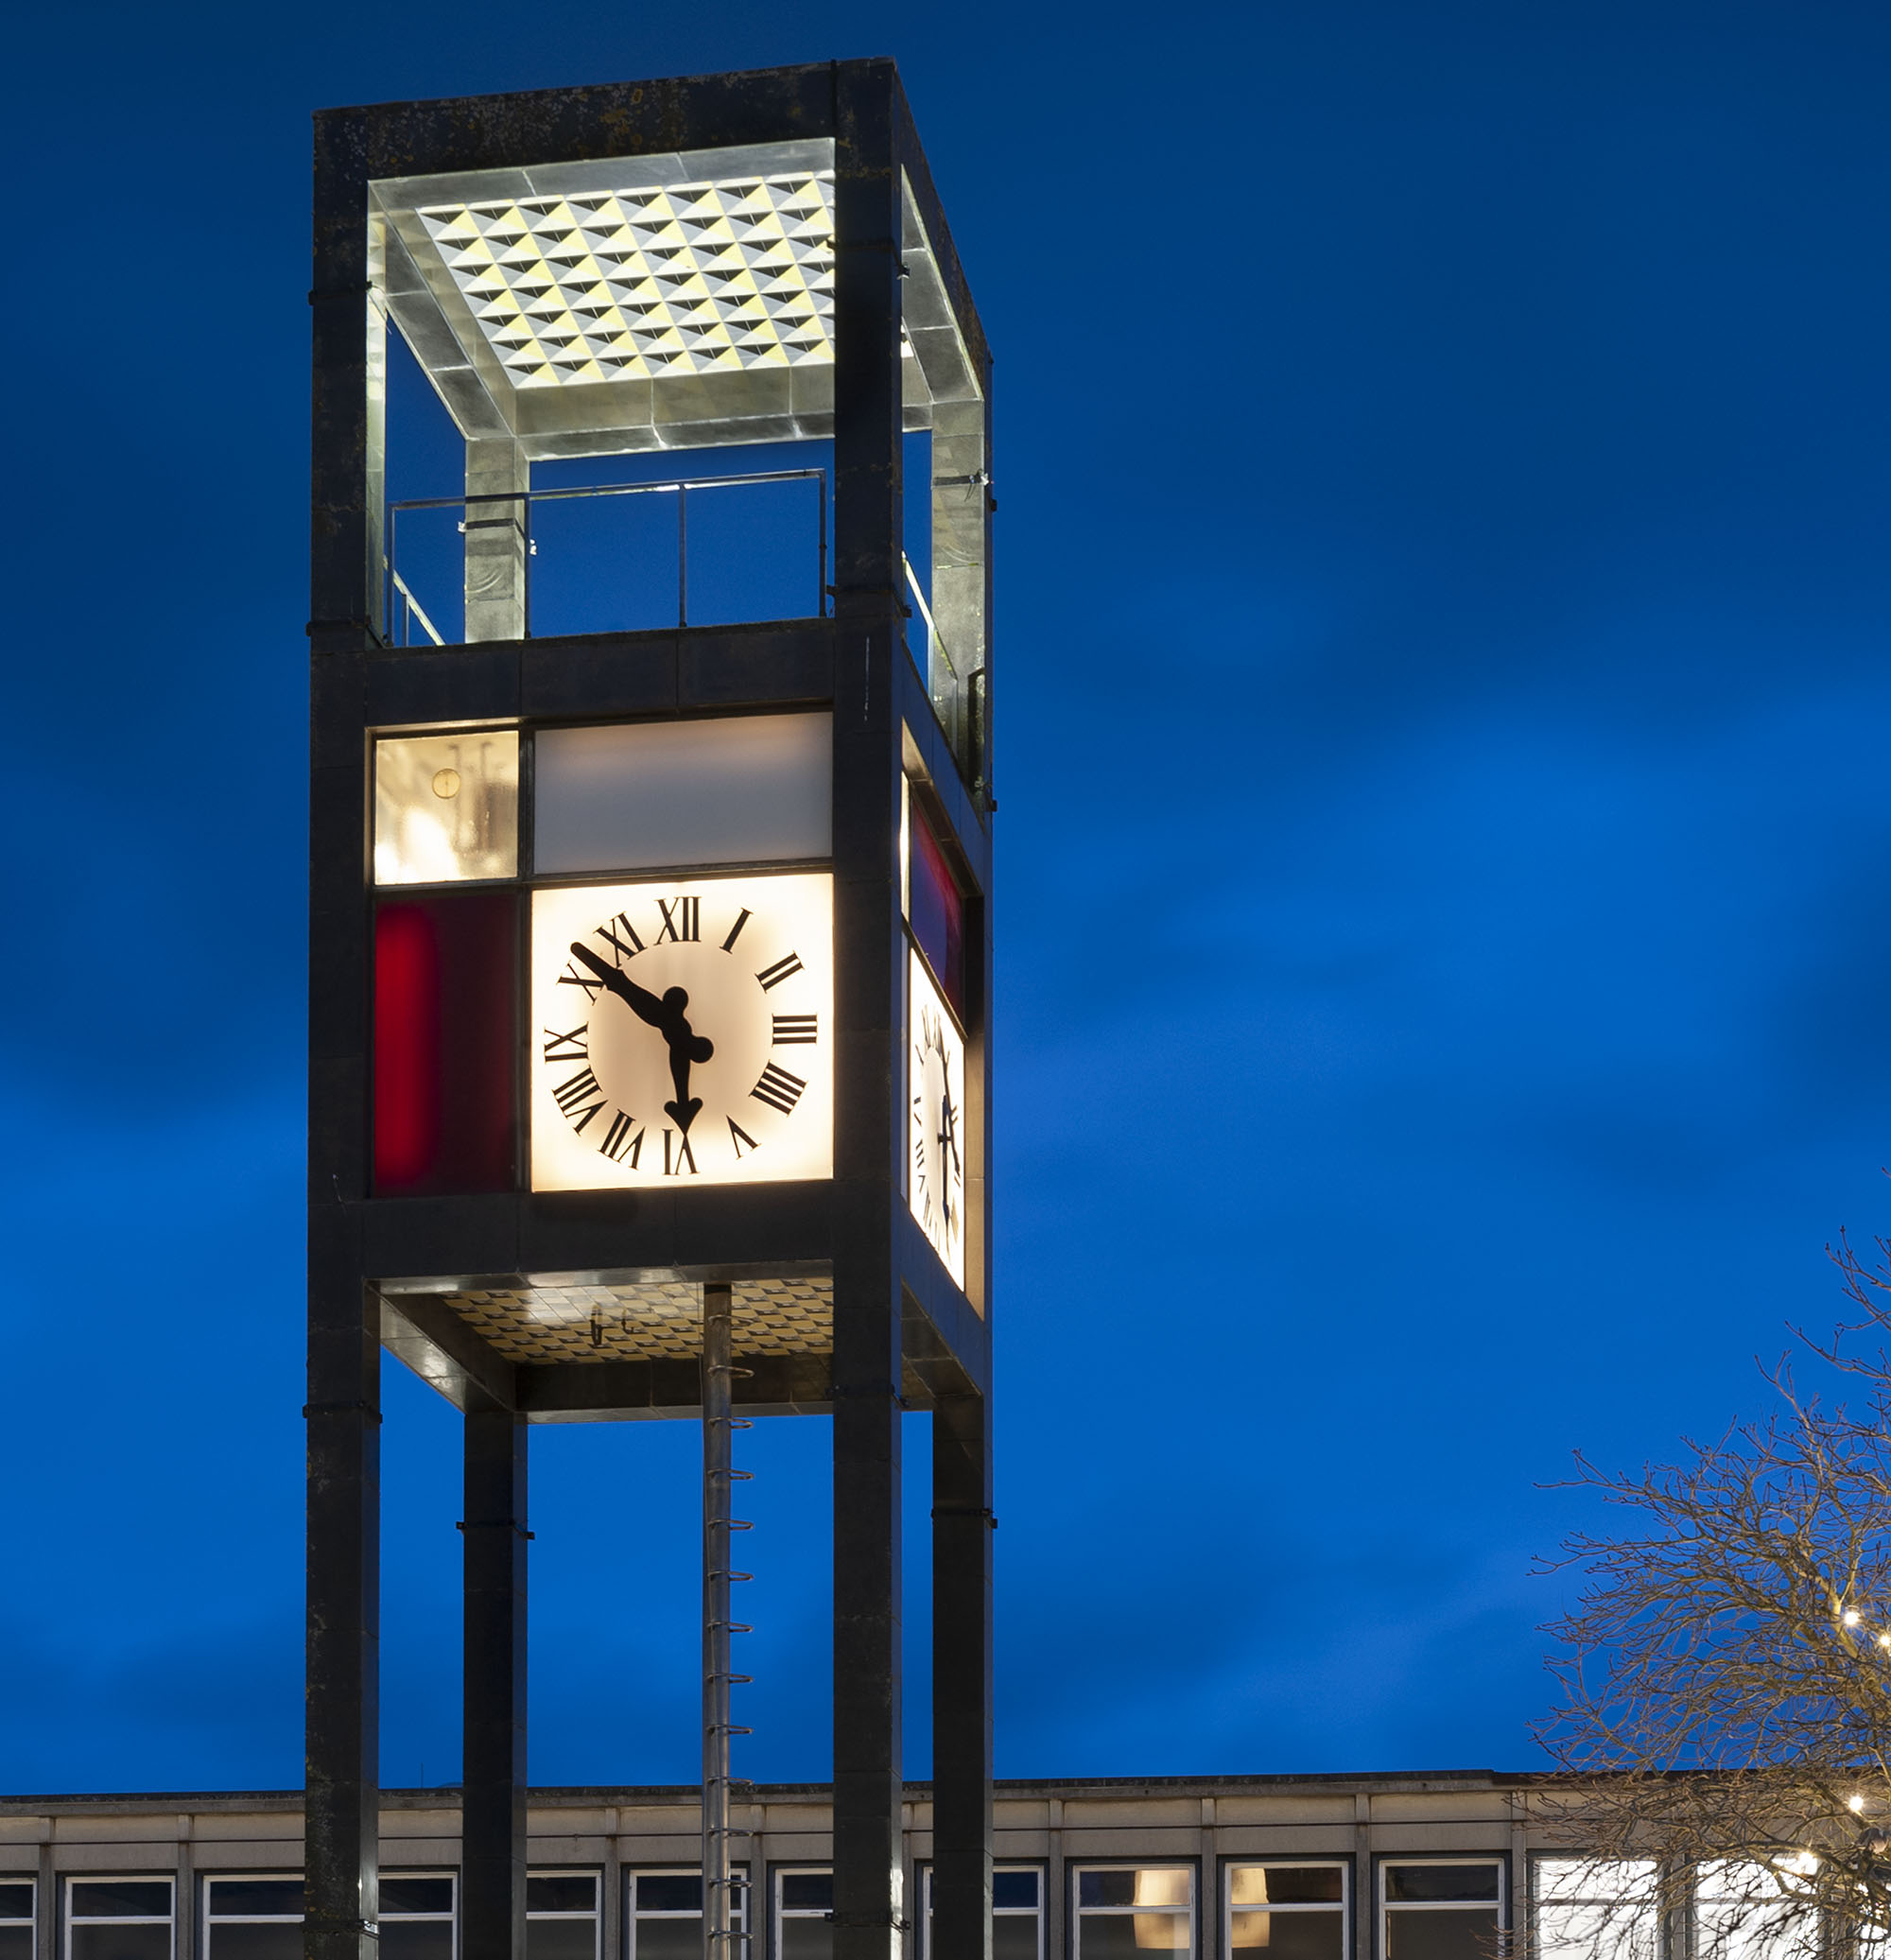 An illuminated clock tower at night